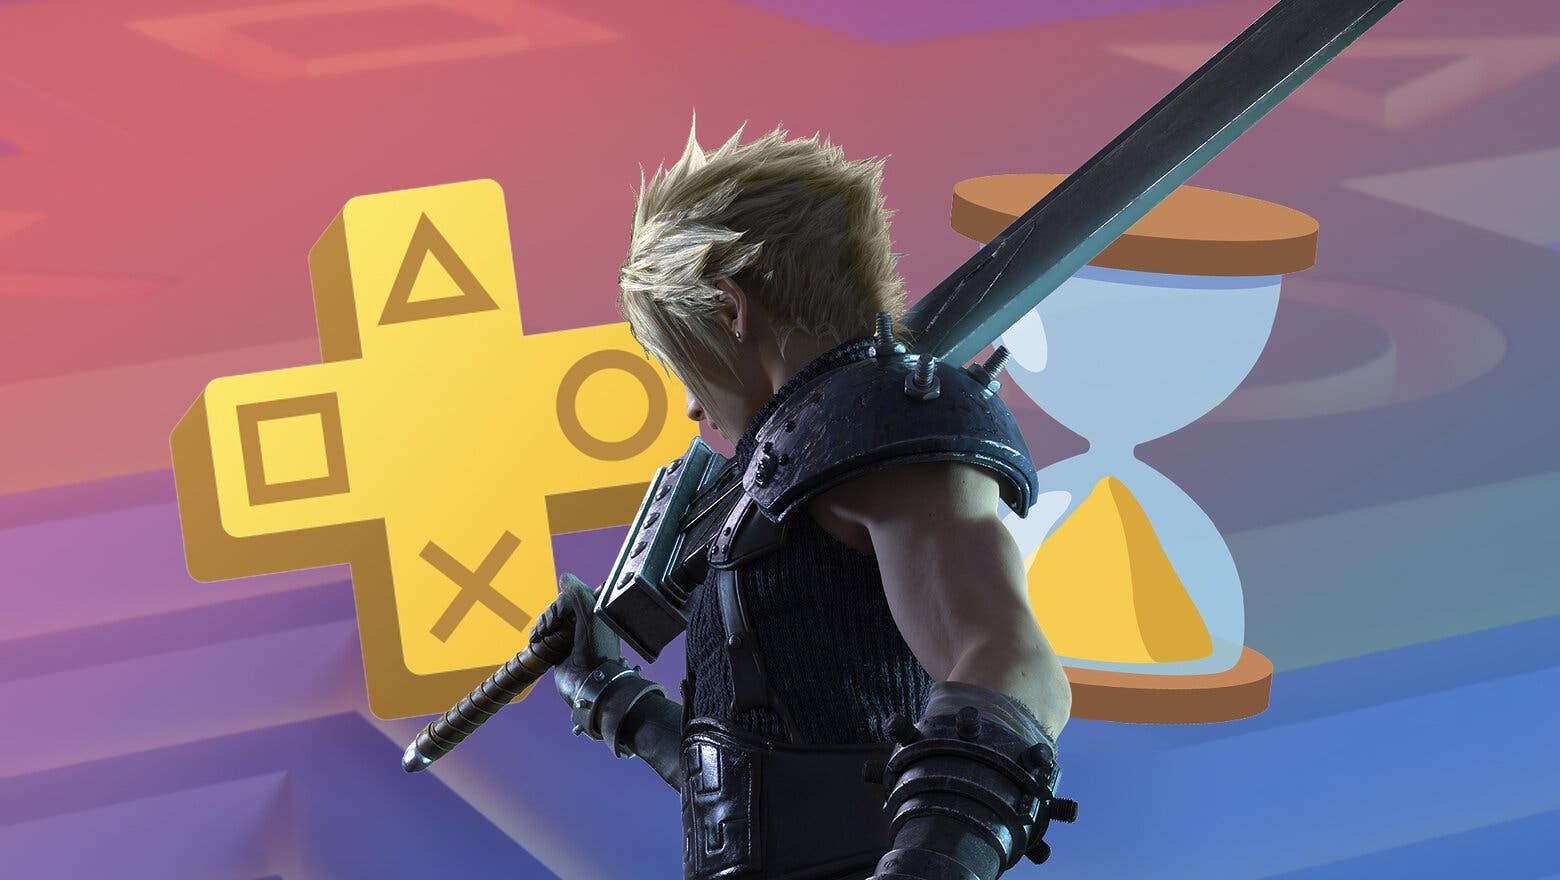 Render de Cloud Strife de Final Fantasy VII Remake junto al logo de PS Plus y un emoji de reloj de arena